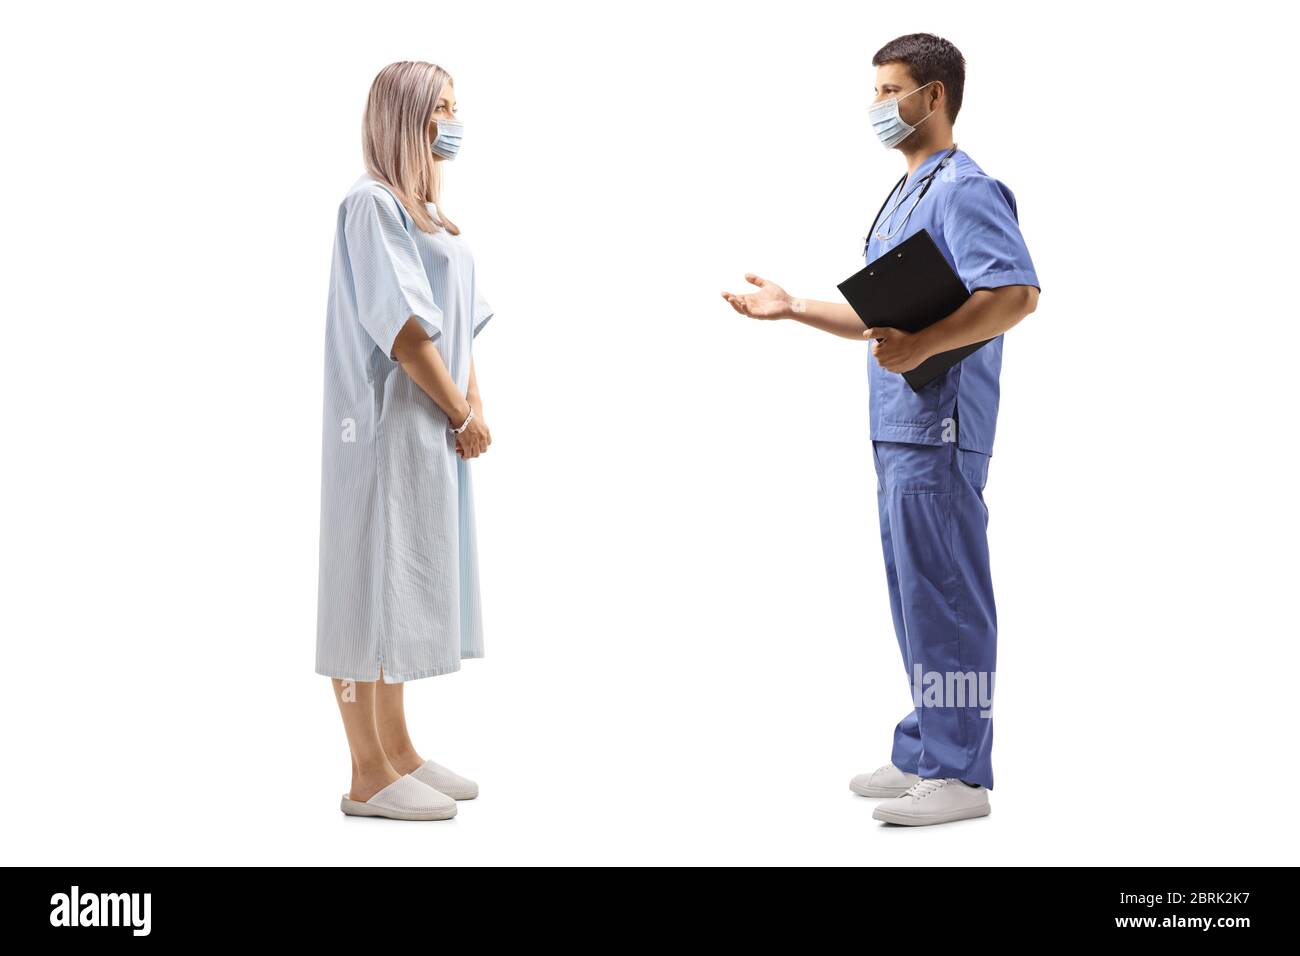 Prise de vue en profil d'une patiente dans une blouse d'hôpital et d'un médecin portant des masques protecteurs isolés sur fond blanc Banque D'Images